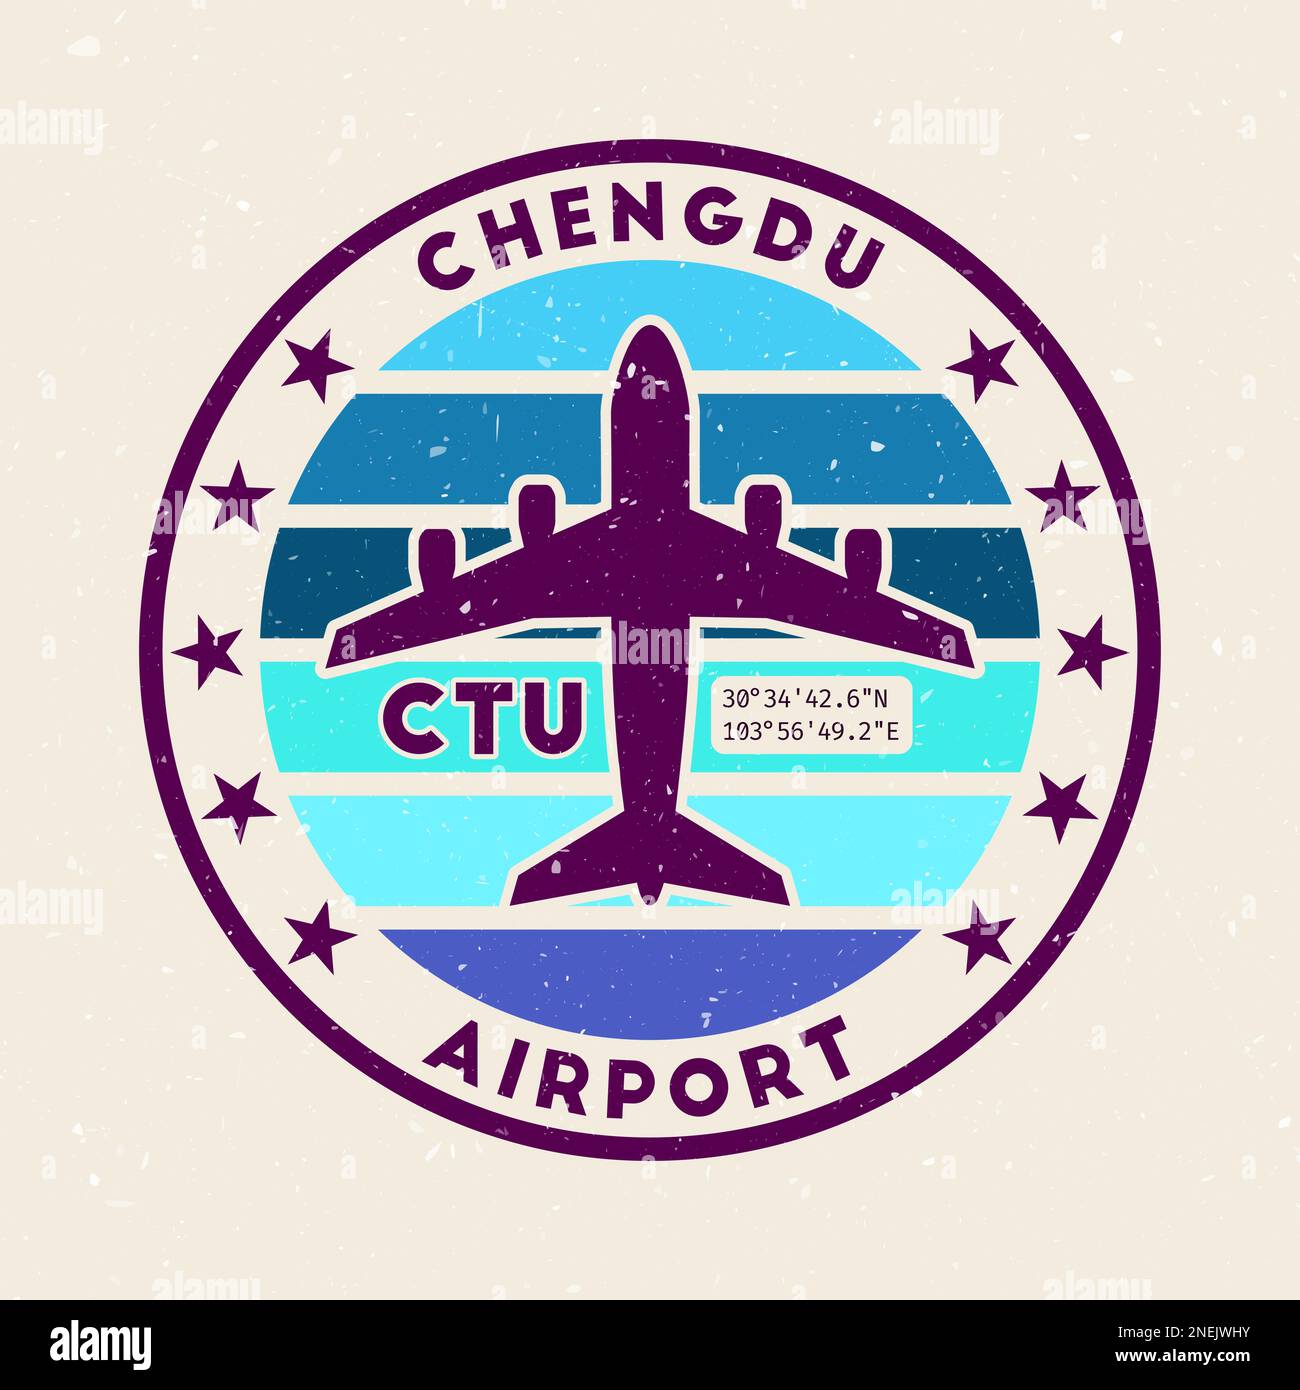 Abzeichen des Flughafens Chengdu. Rundes Abzeichen mit Vintage-Streifen, Flugzeugform, Flughafen-IATA-Code und GPS-Koordinaten. Ansprechende Vektordarstellung. Stock Vektor